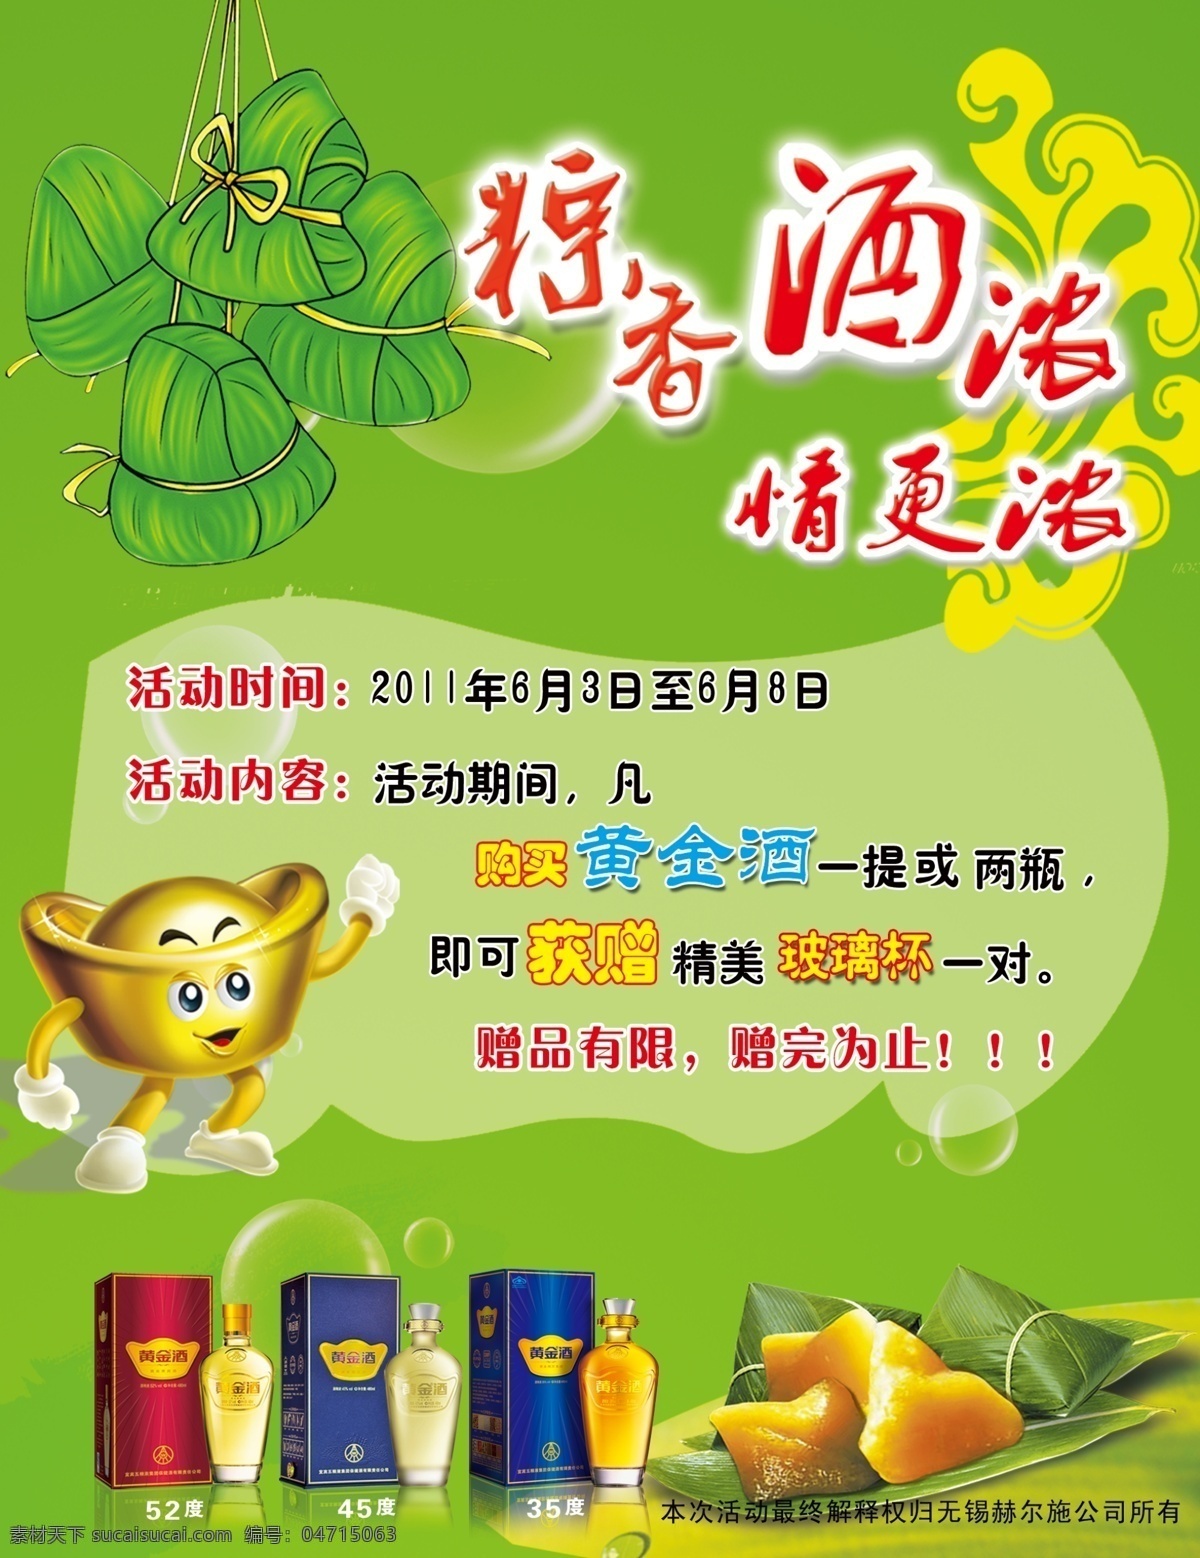 粽子 节 黄金 酒 活动 海报 节日素材 端午节